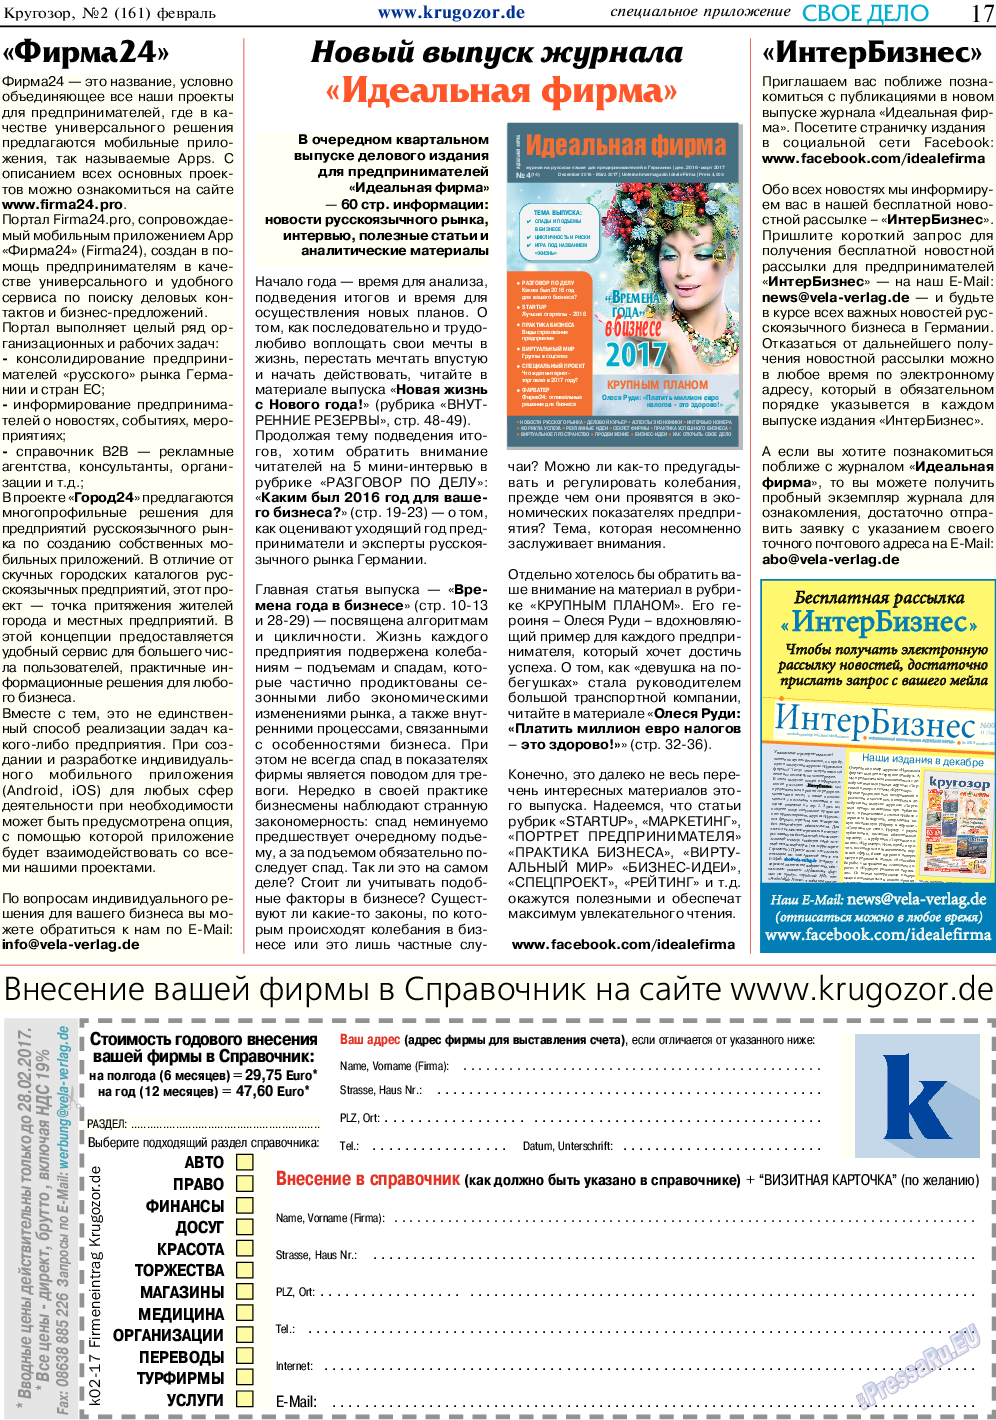 Кругозор, газета. 2017 №2 стр.17